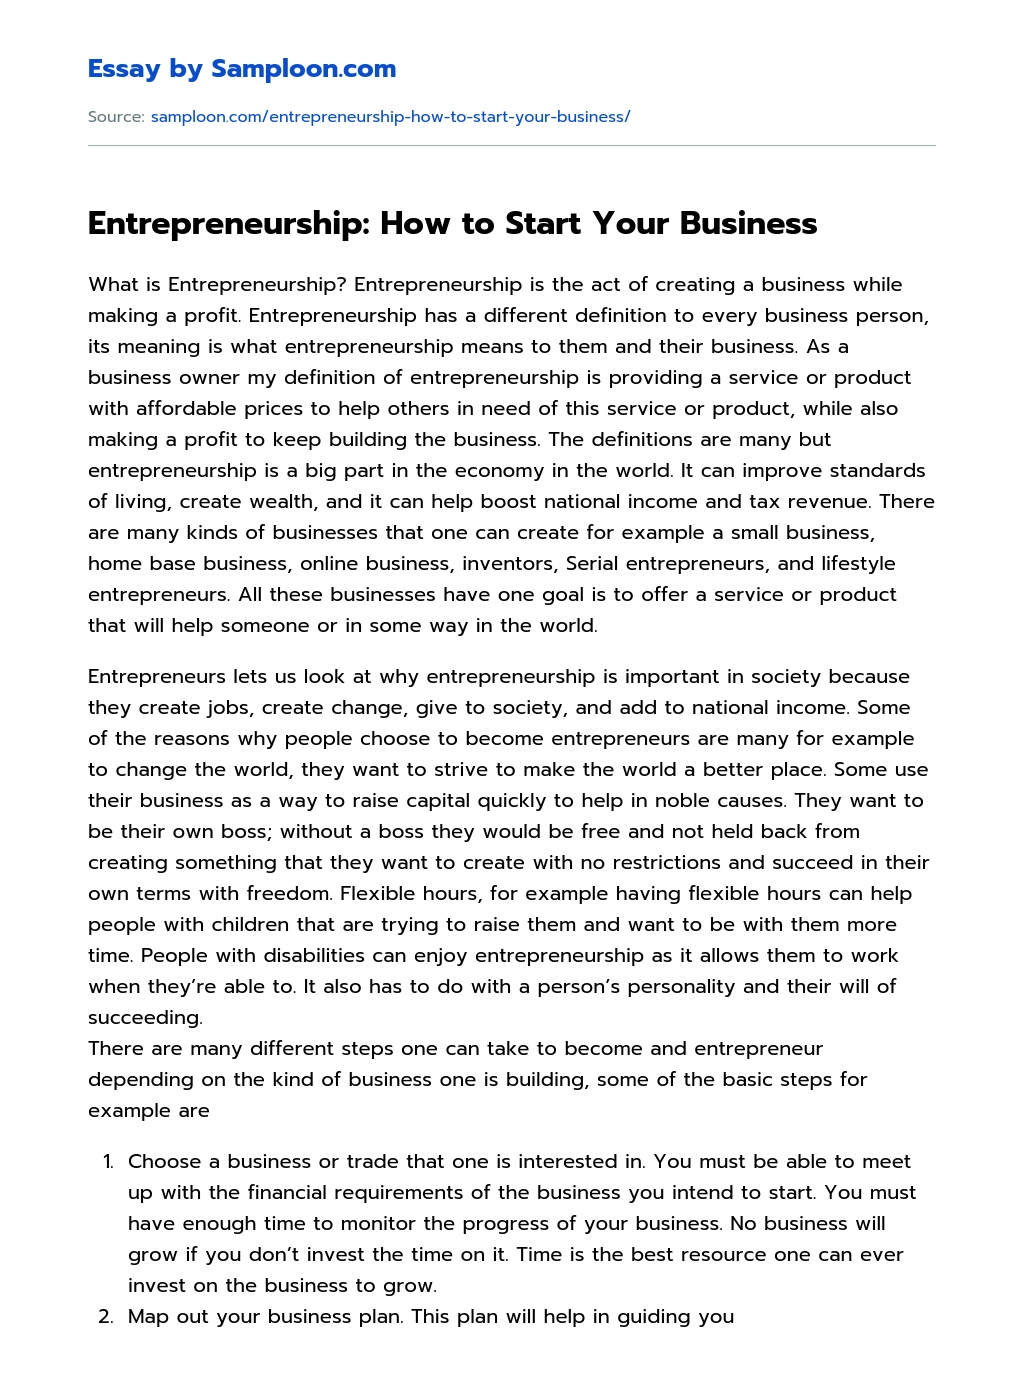 Entrepreneurship: How to Start Your Business essay